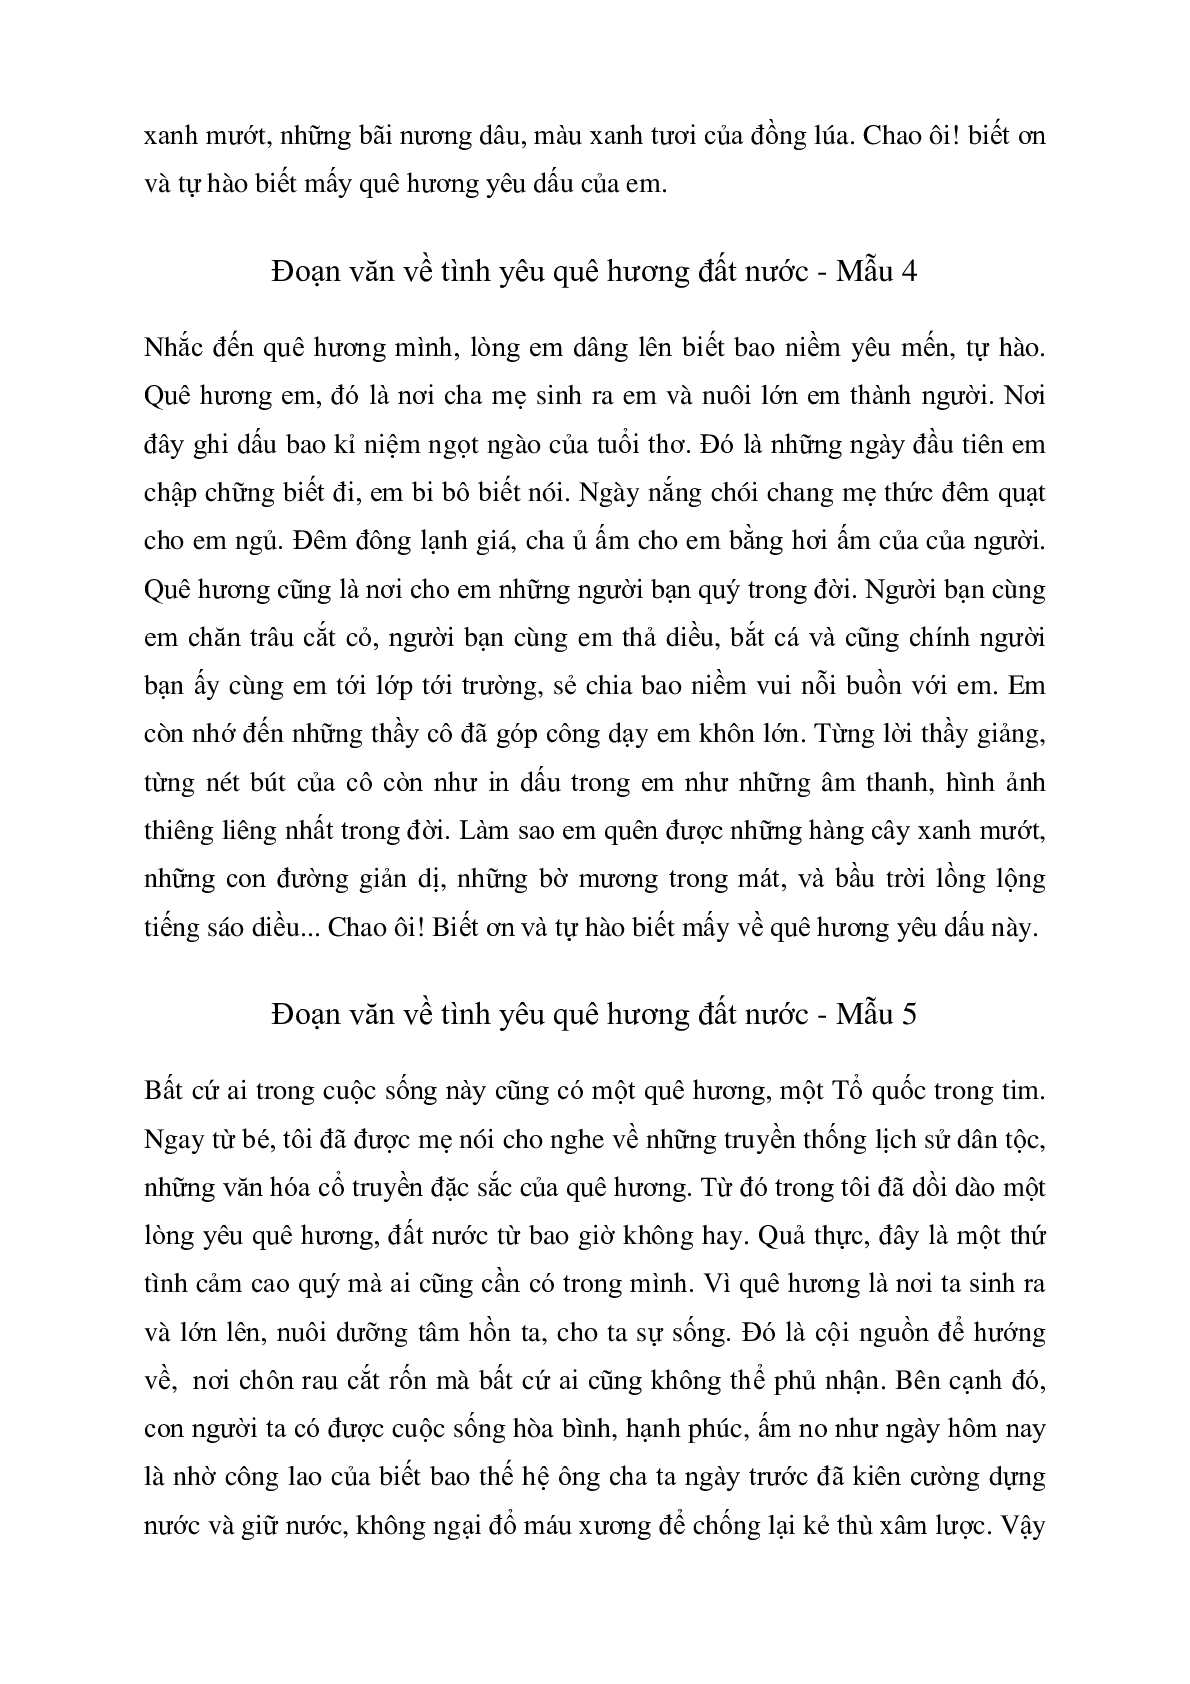 Đoạn văn về tình yêu quê hương đất nước môn Văn lớp 7 (10 mẫu) (trang 3)